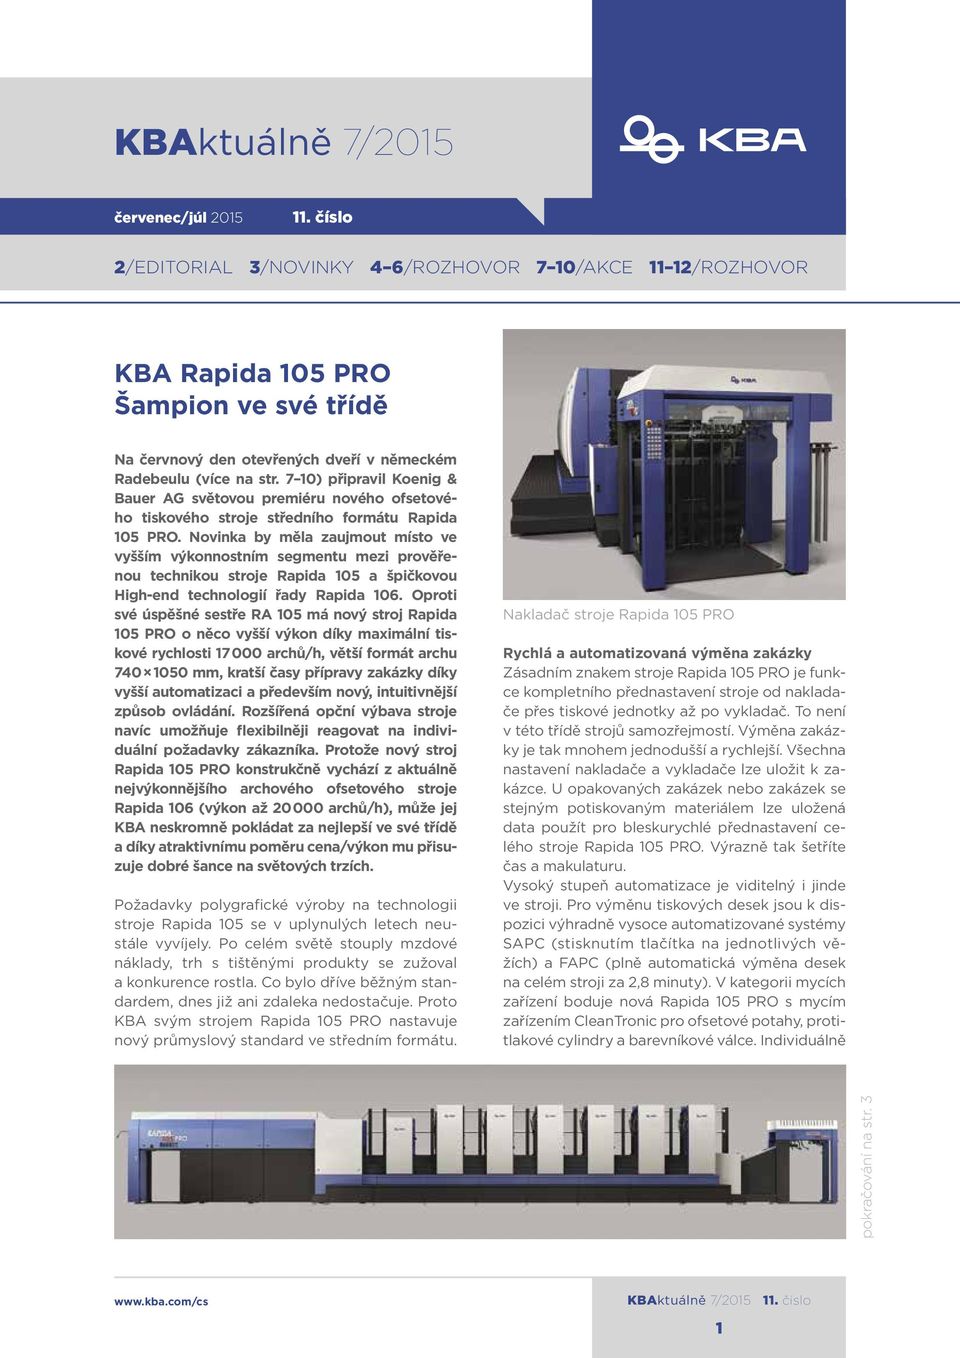 7 10) připravil Koenig & Bauer AG světovou premiéru nového ofsetového tiskového stroje středního formátu Rapida 105 PRO.